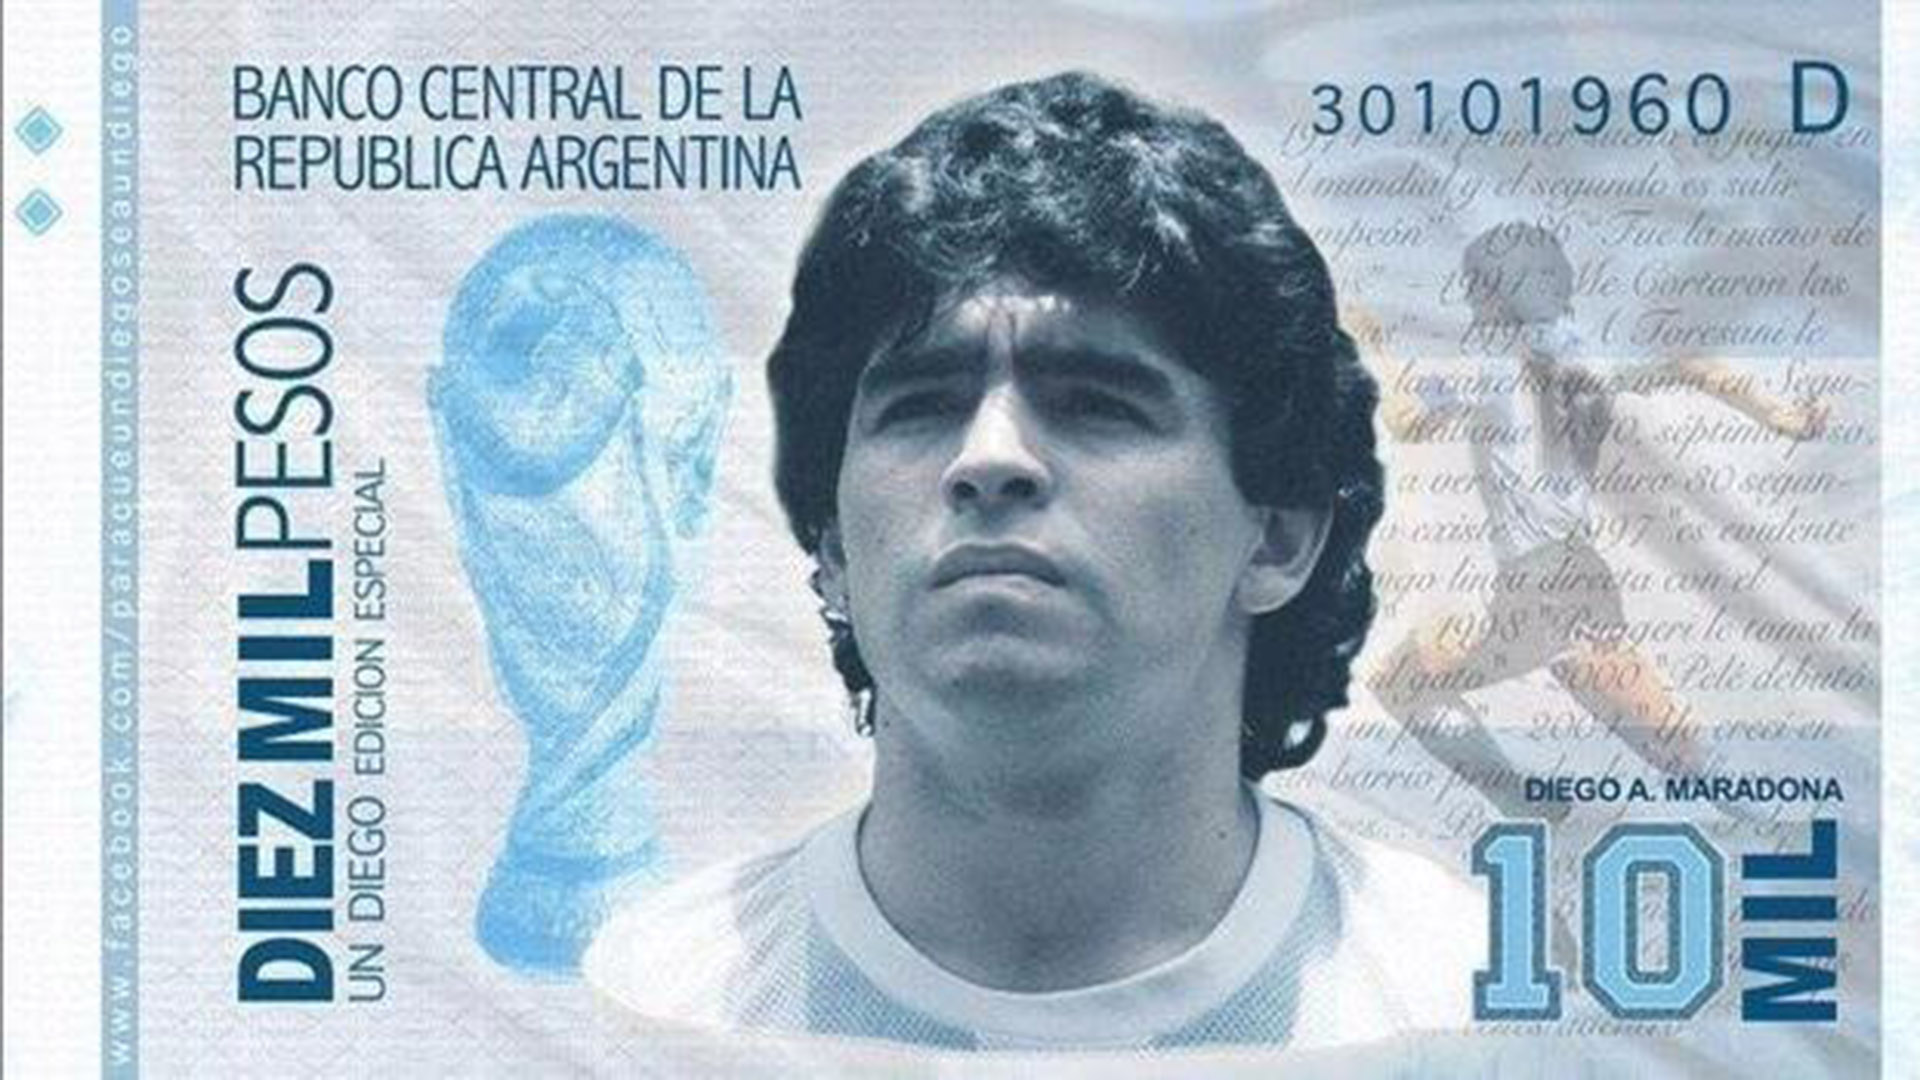 La imagen del posible billete en homenaje a Maradona